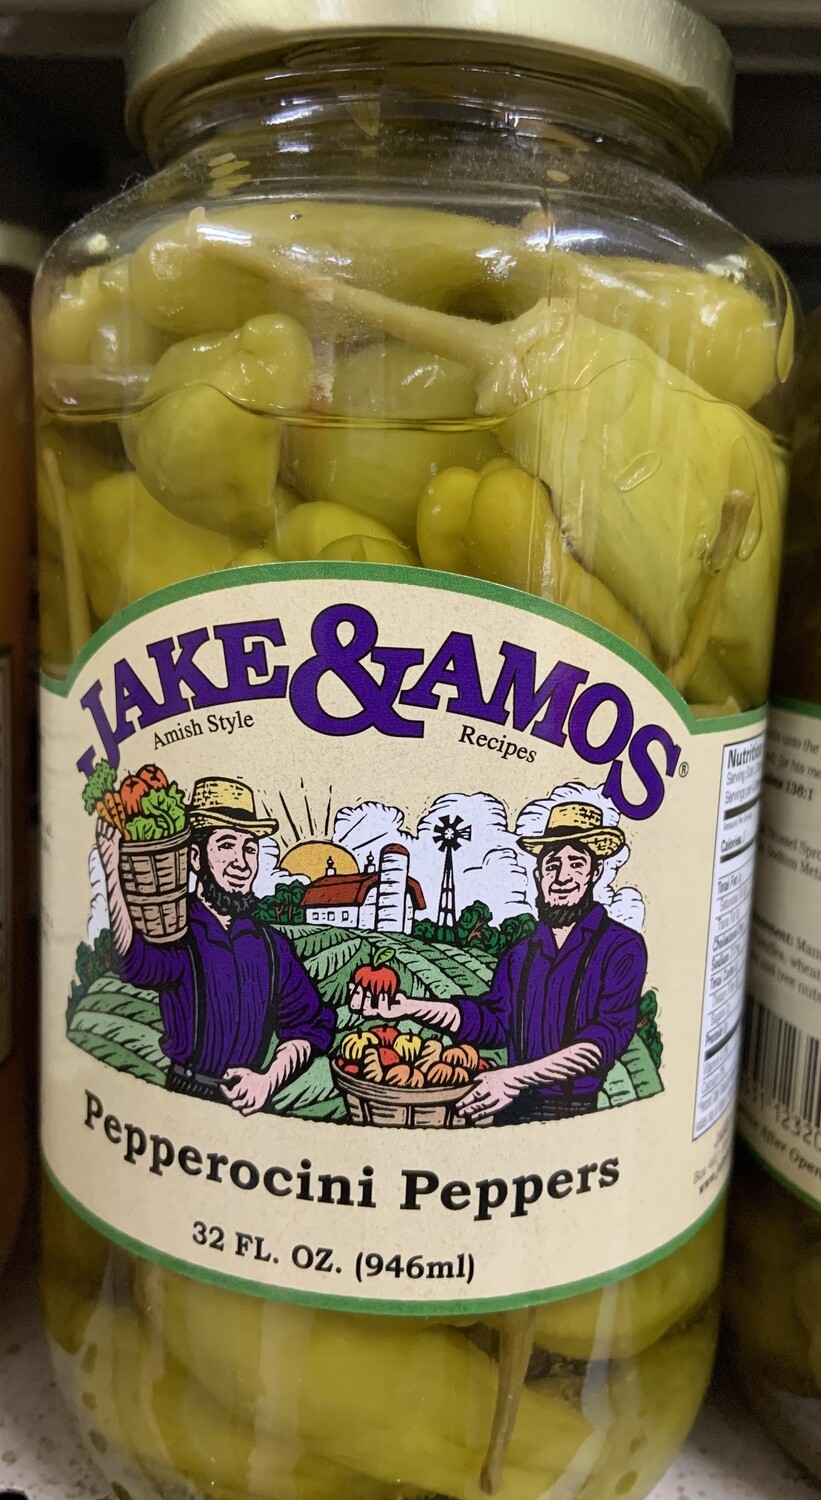 Jake & Amos Pepperocini Peppers 32 oz